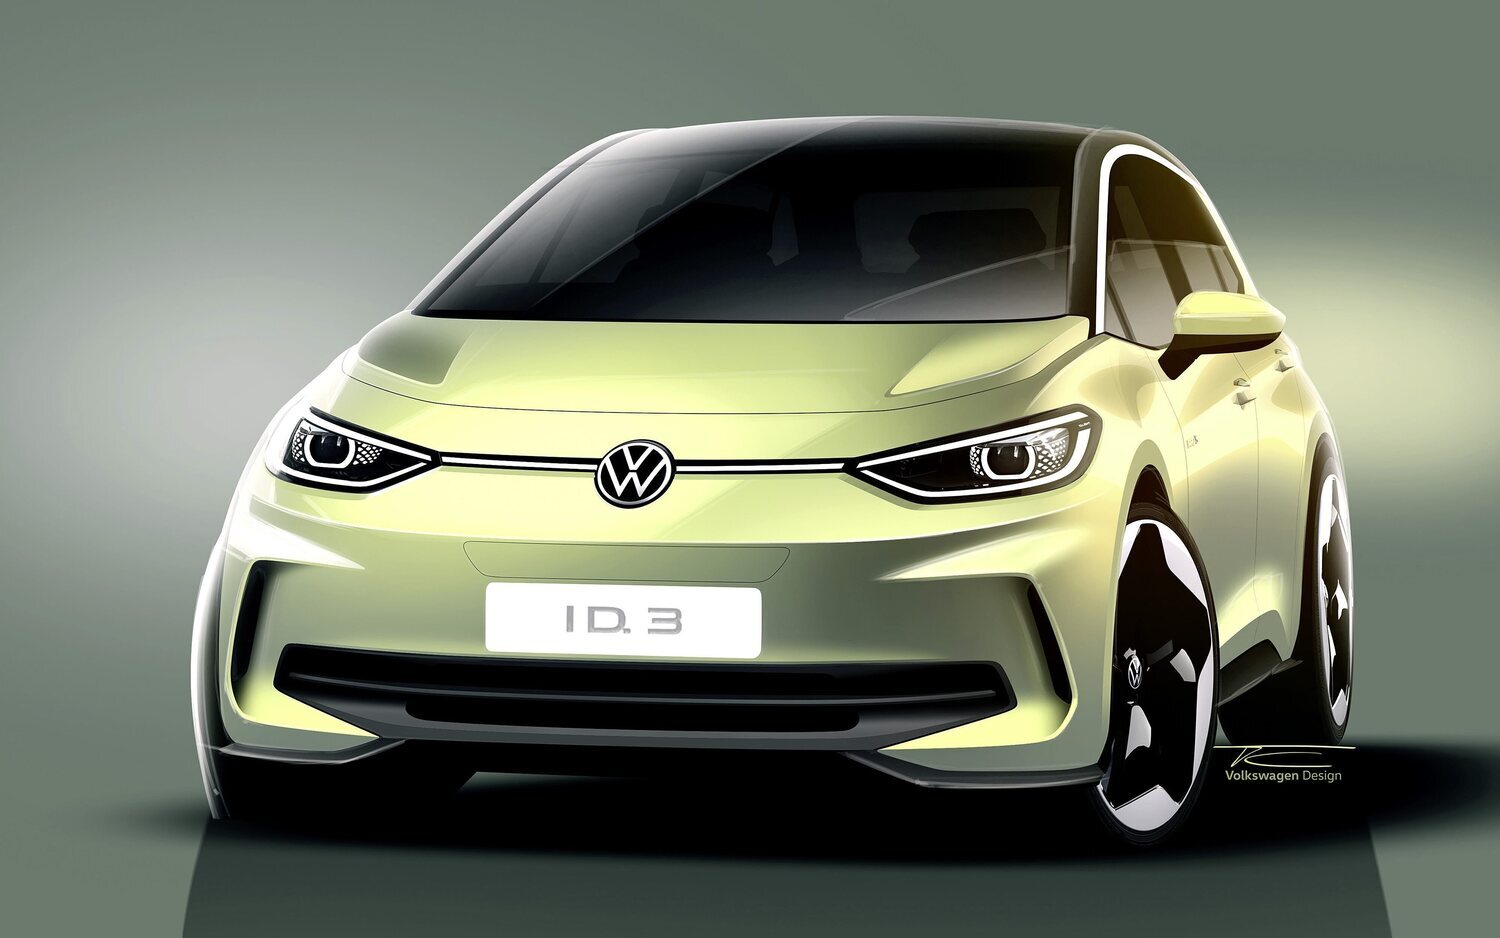 Volkswagen ID.3 ya empieza a producirse su nueva generación